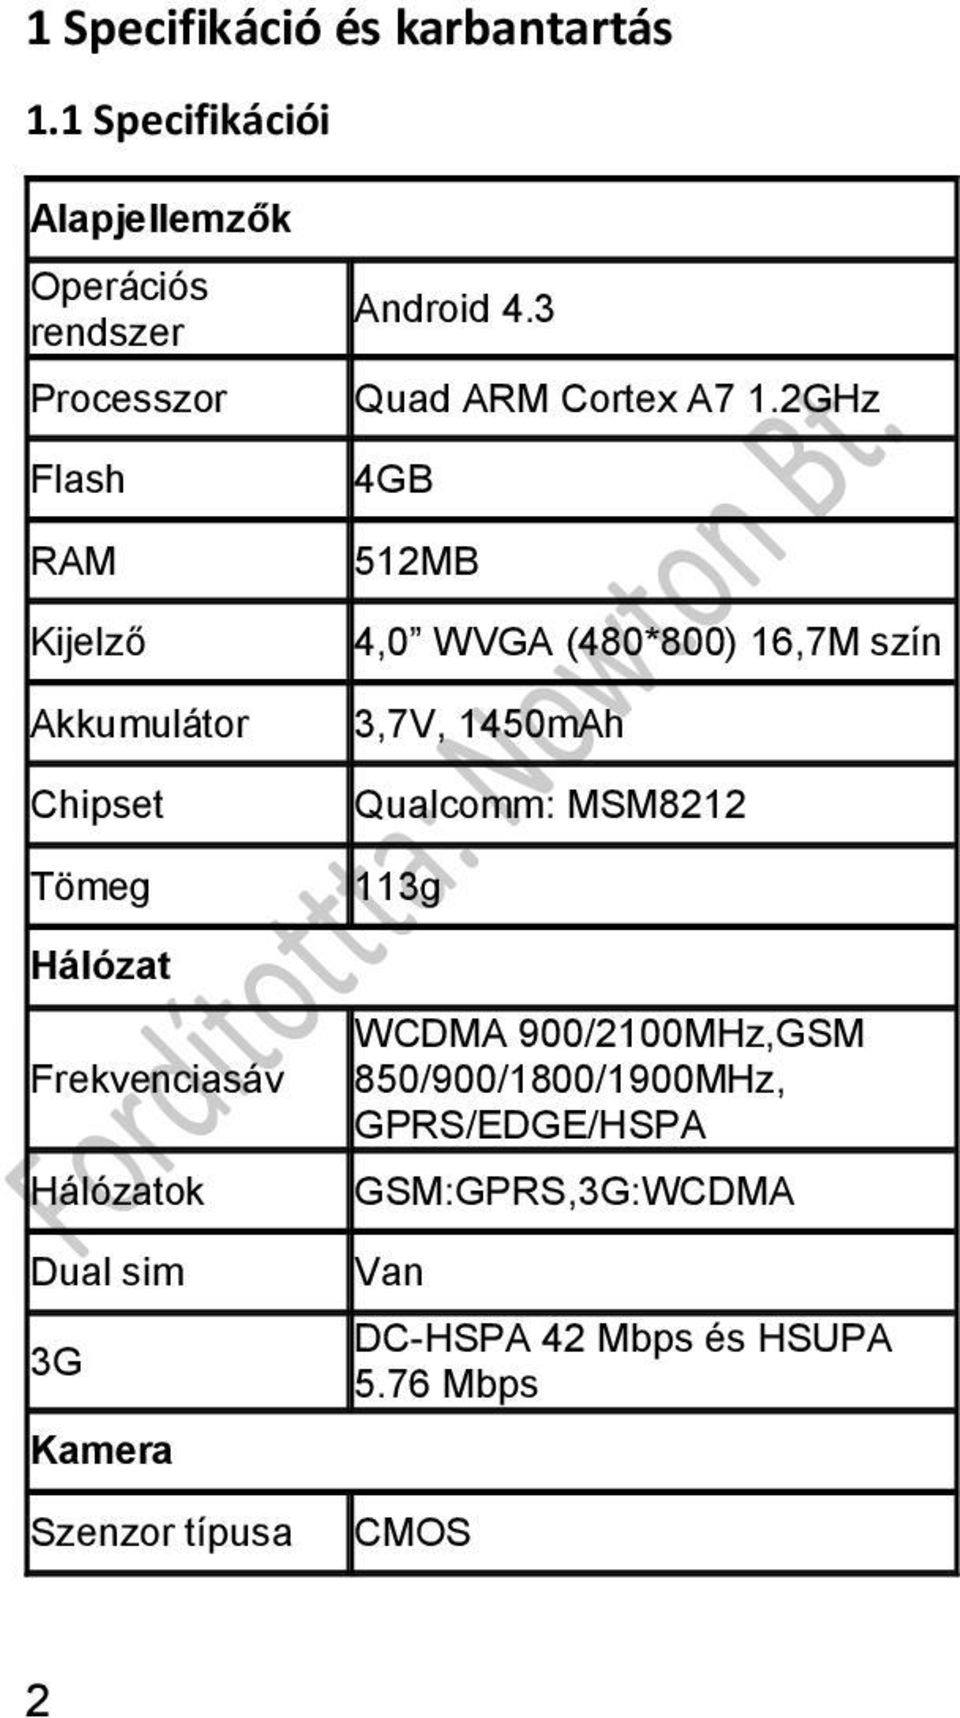 Hálózat Frekvenciasáv Hálózatok Dual sim 3G Kamera Szenzor típusa Android 4.3 Quad ARM Cortex A7 1.